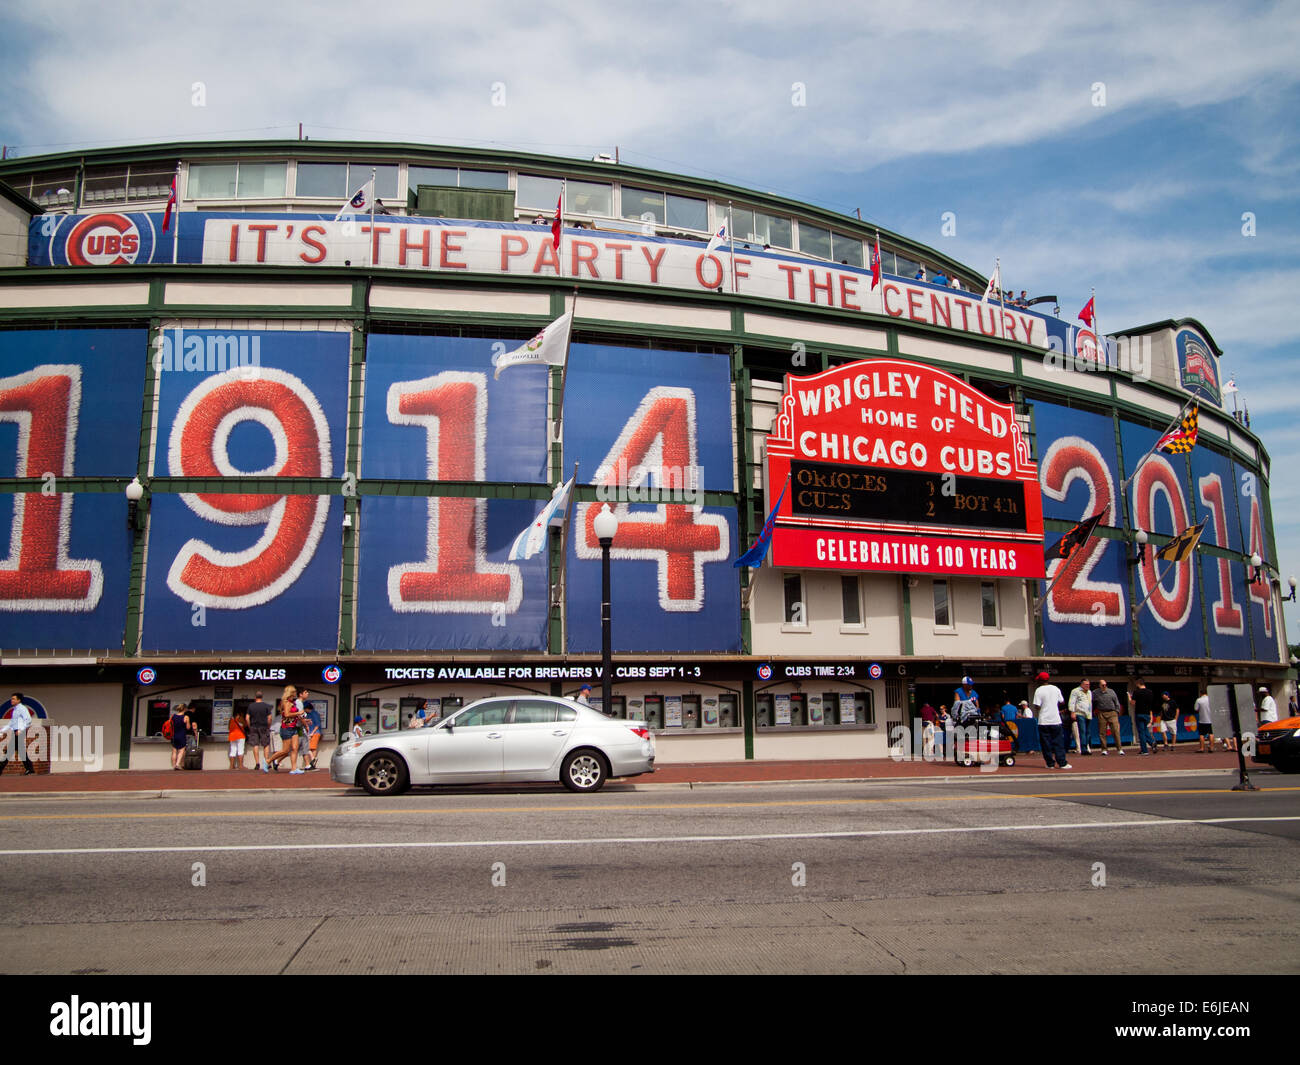 El famoso estadio Wrigley Field y marquesina exterior del estadio de béisbol en 2014, el 100º aniversario de la Ballpark. Chicago. Foto de stock